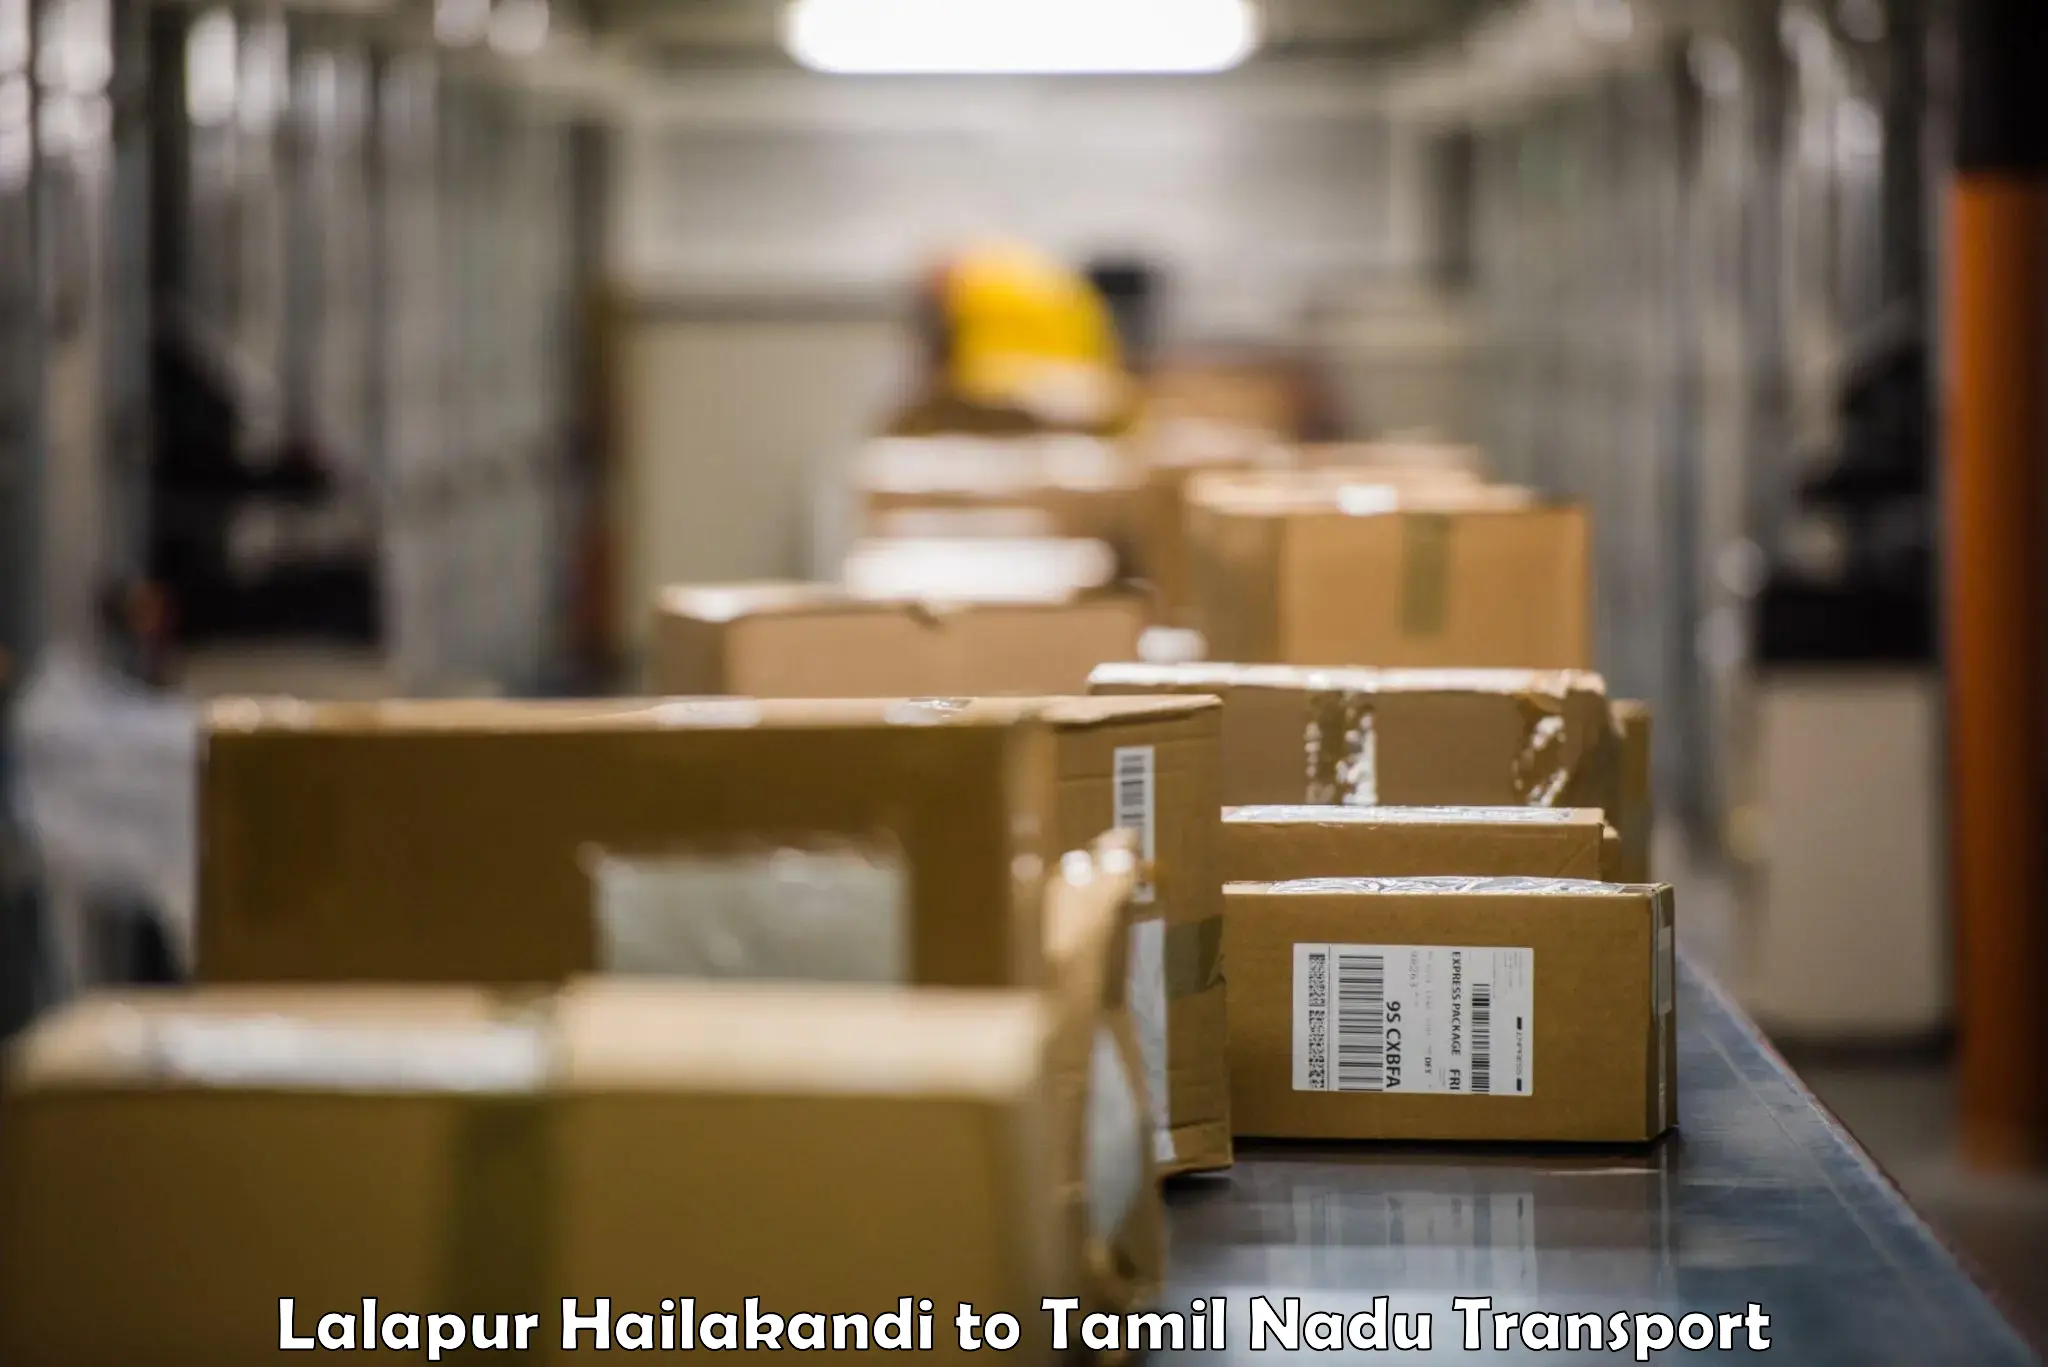 Online transport service Lalapur Hailakandi to Melmaruvathur